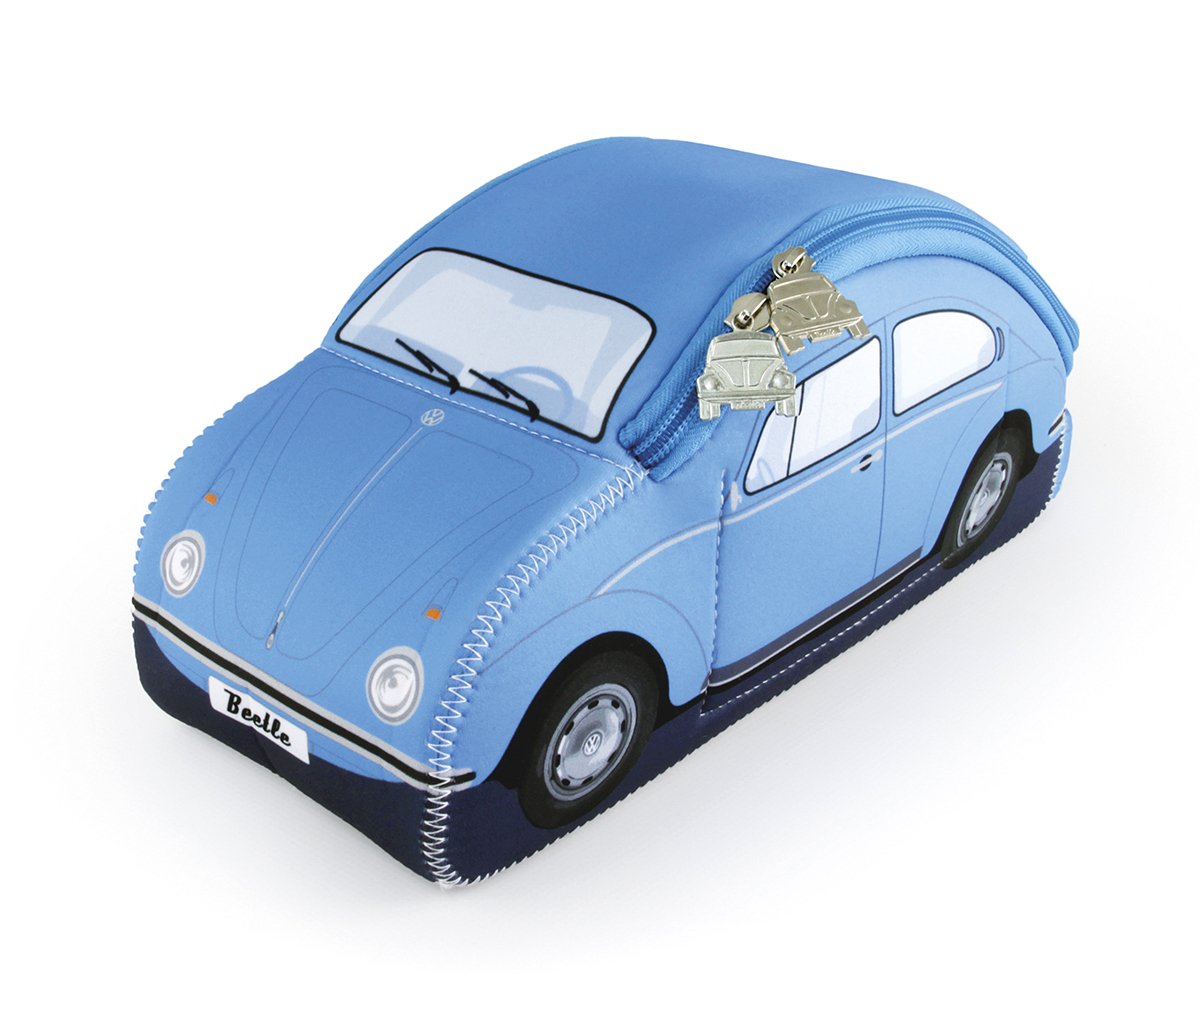 VOLKSWAGEN Sac universel VW Coccinelle 3D en néoprène - bleu clair